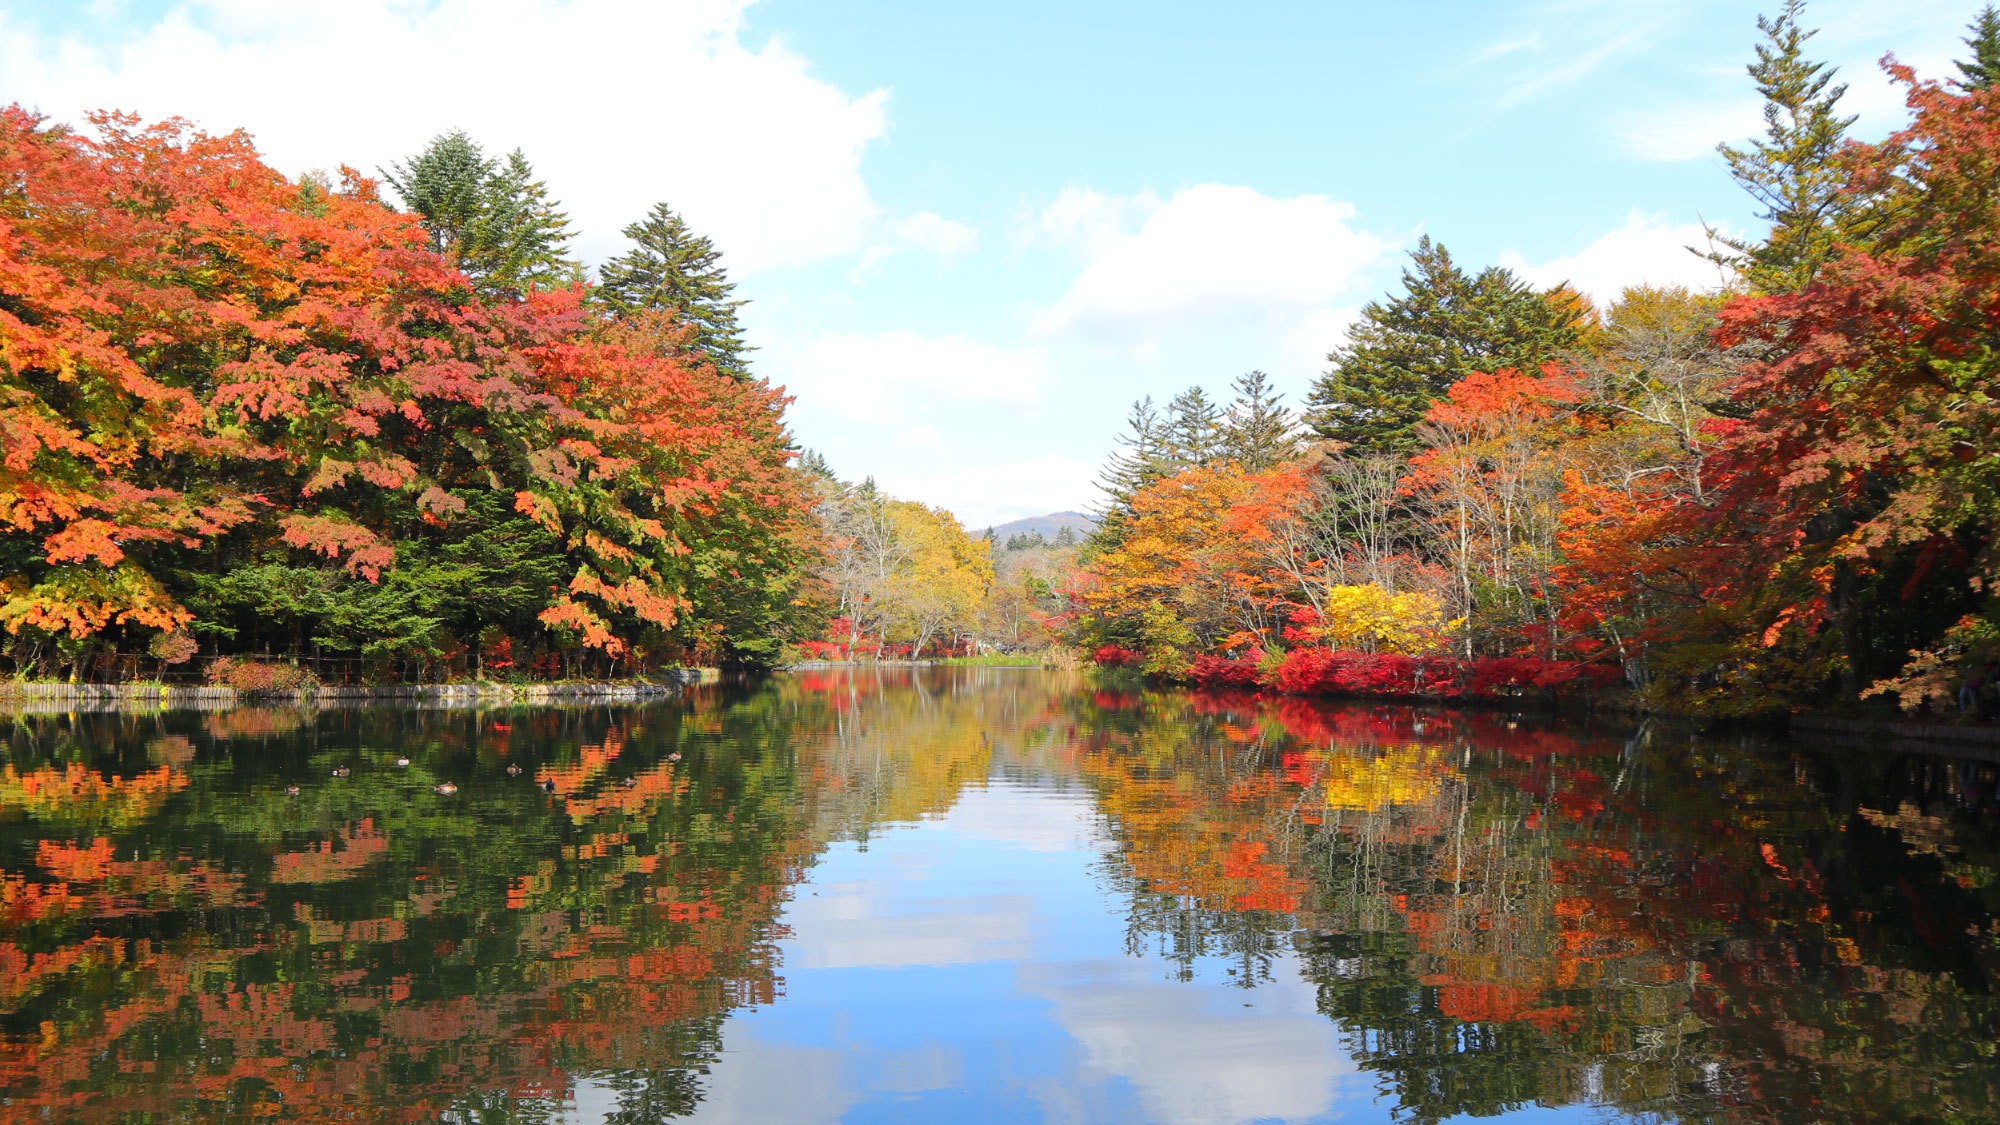 雲場池／湖面に映る四季折々の自然が美しい軽井沢の必見の名所。秋の紅葉は特におすすめ。